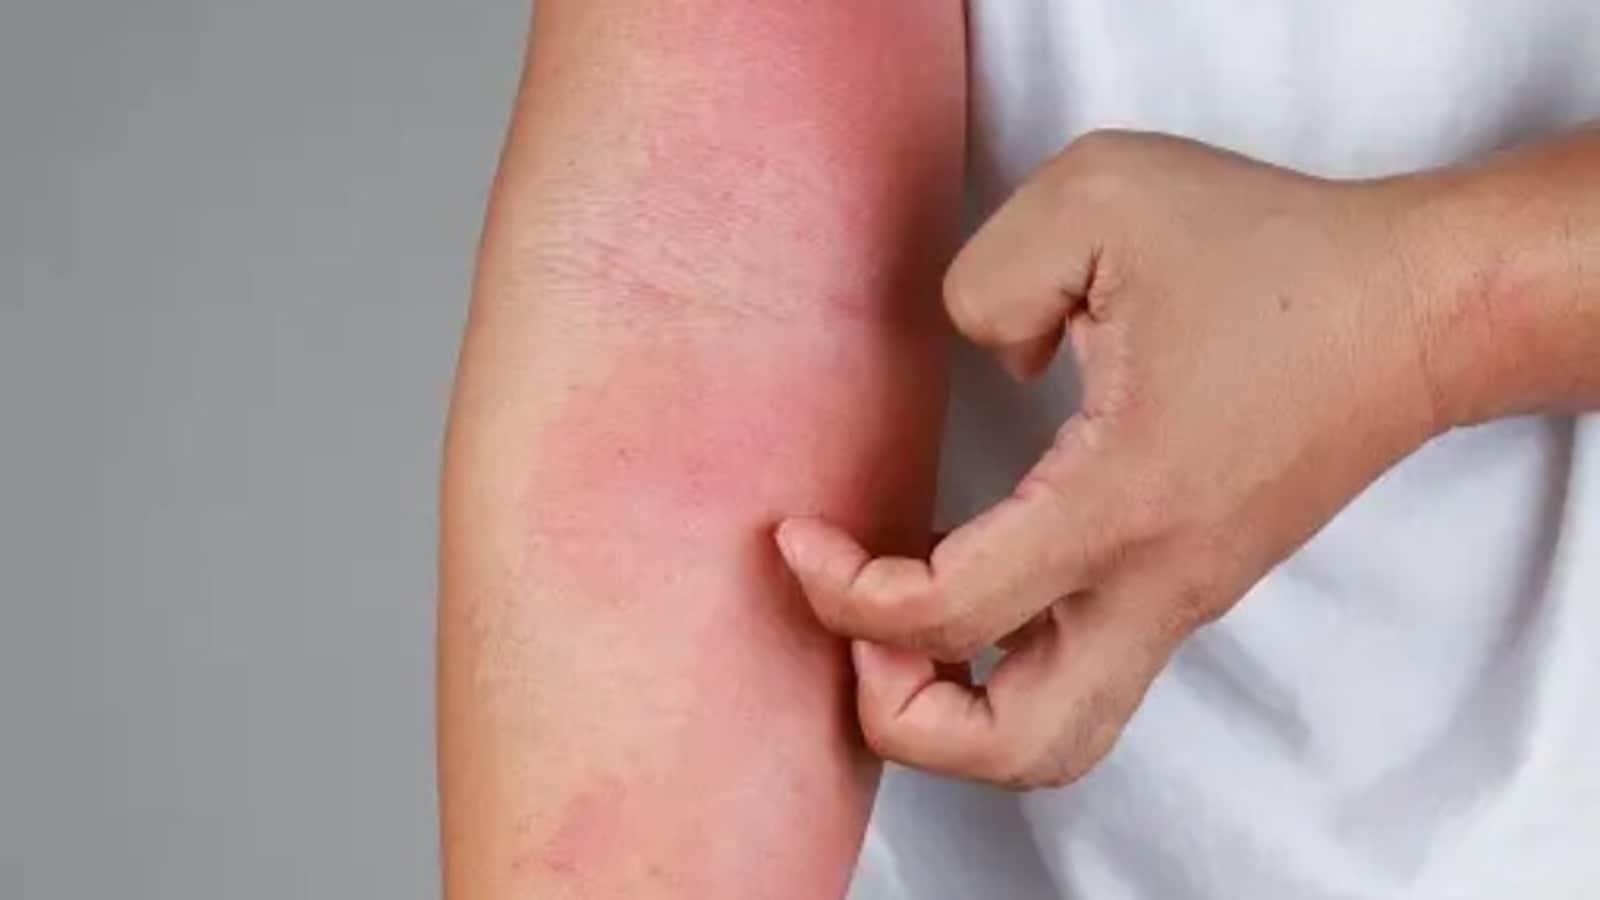 सामान्य त्वचा एलर्जी और त्वचा कैंसर के जोखिम से उनका संभावित संबंध